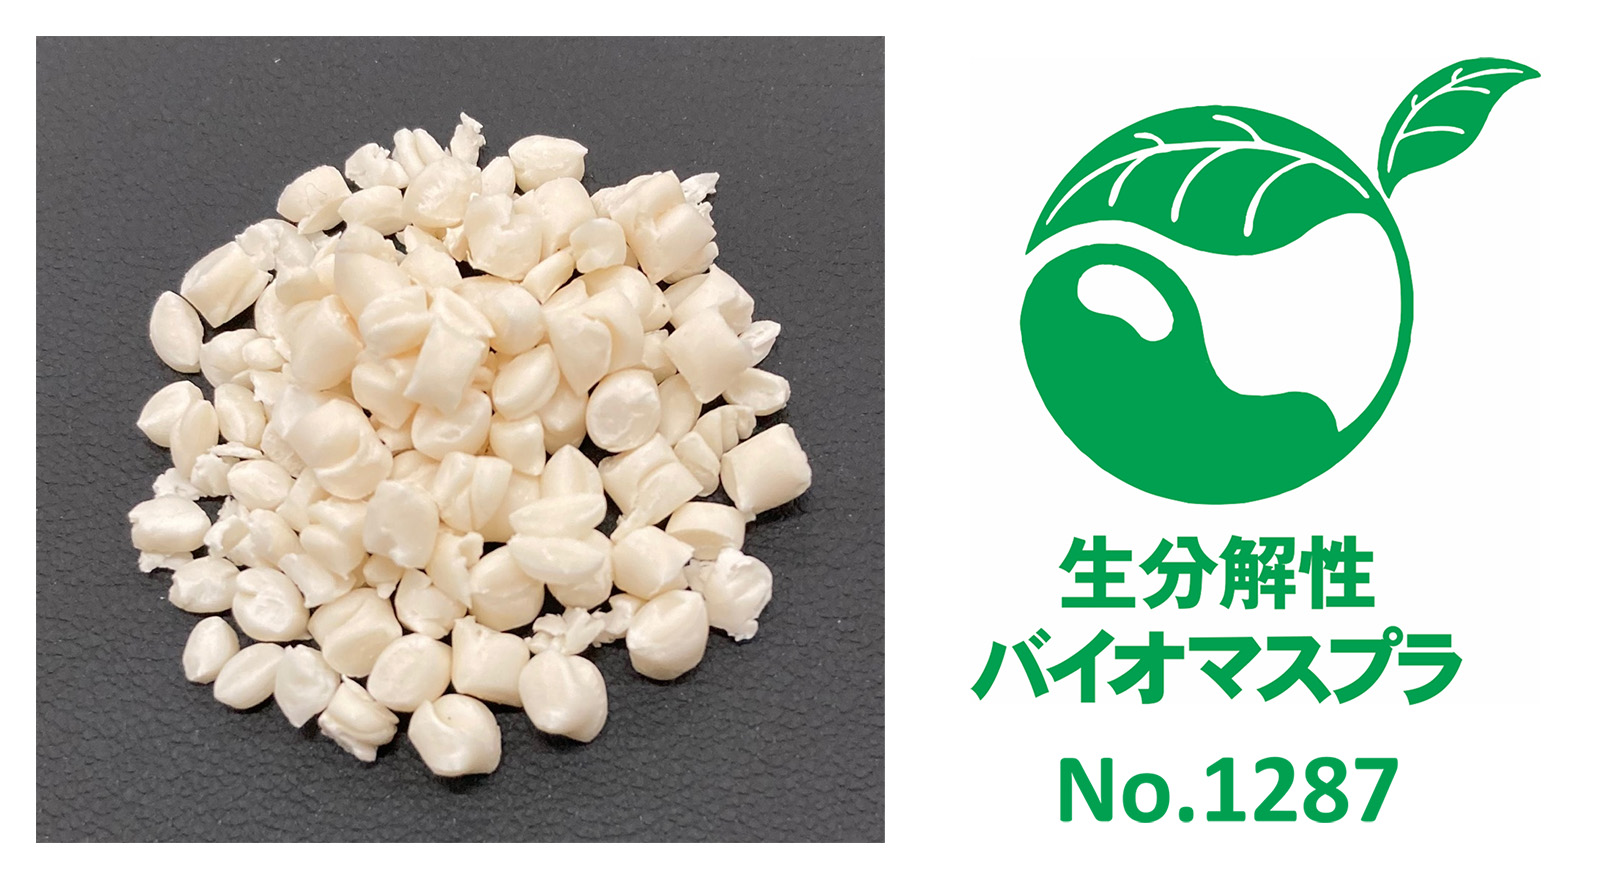 生分解性プラスチックの中で日本バイオプラスチック協会のバイオマスプラ識別表示基準を満たす製品（左写真）と、「生分解性バイオマスプラ」のマーク